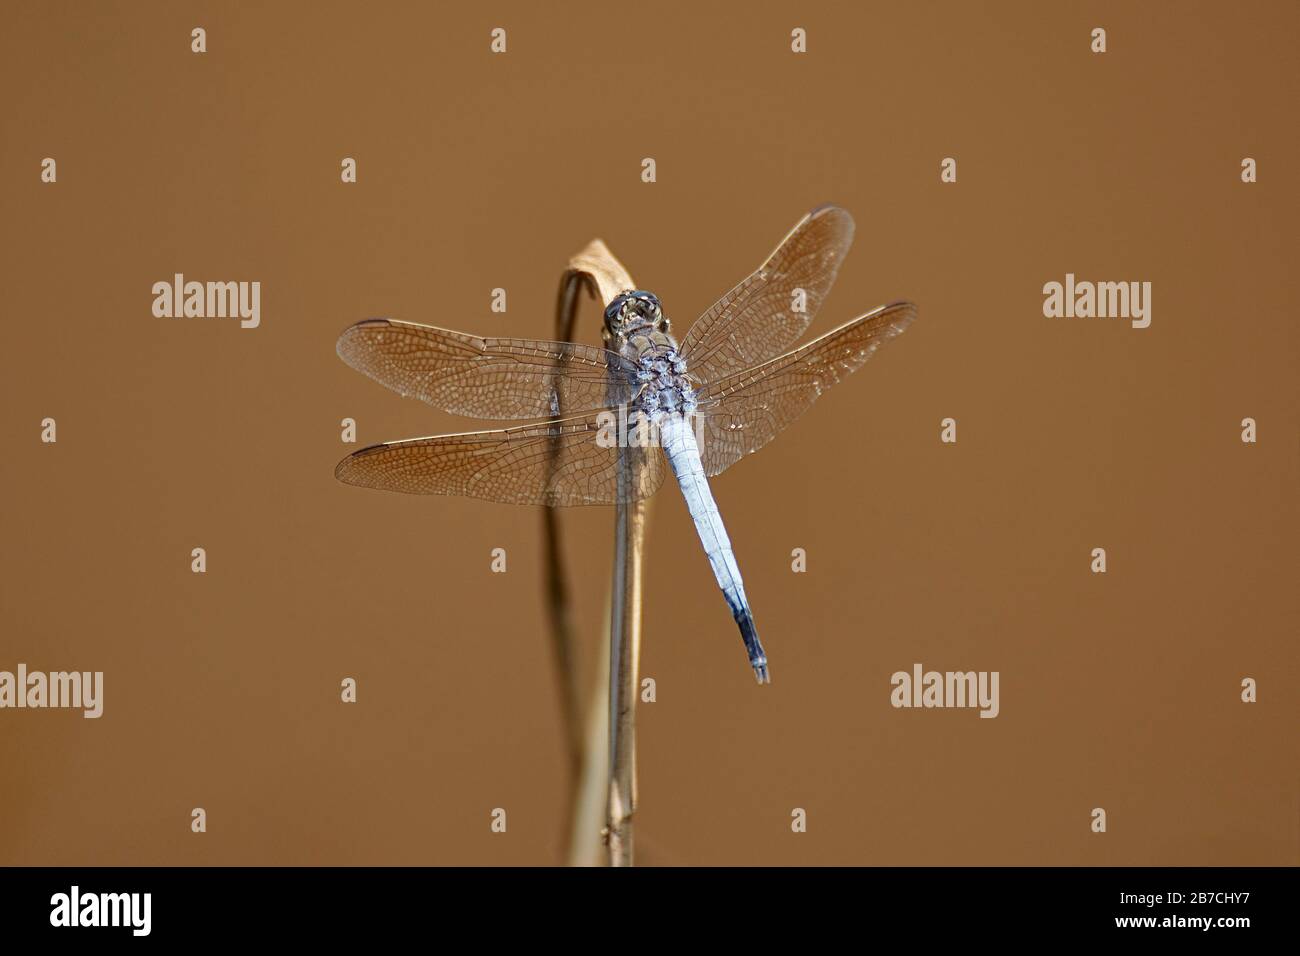 Una libellula è un insetto appartenente all'ordine Odonata, l'infrastruttura Anisoptera. Le libellule adulte sono caratterizzate da grandi occhi sfaccettati, due p Foto Stock